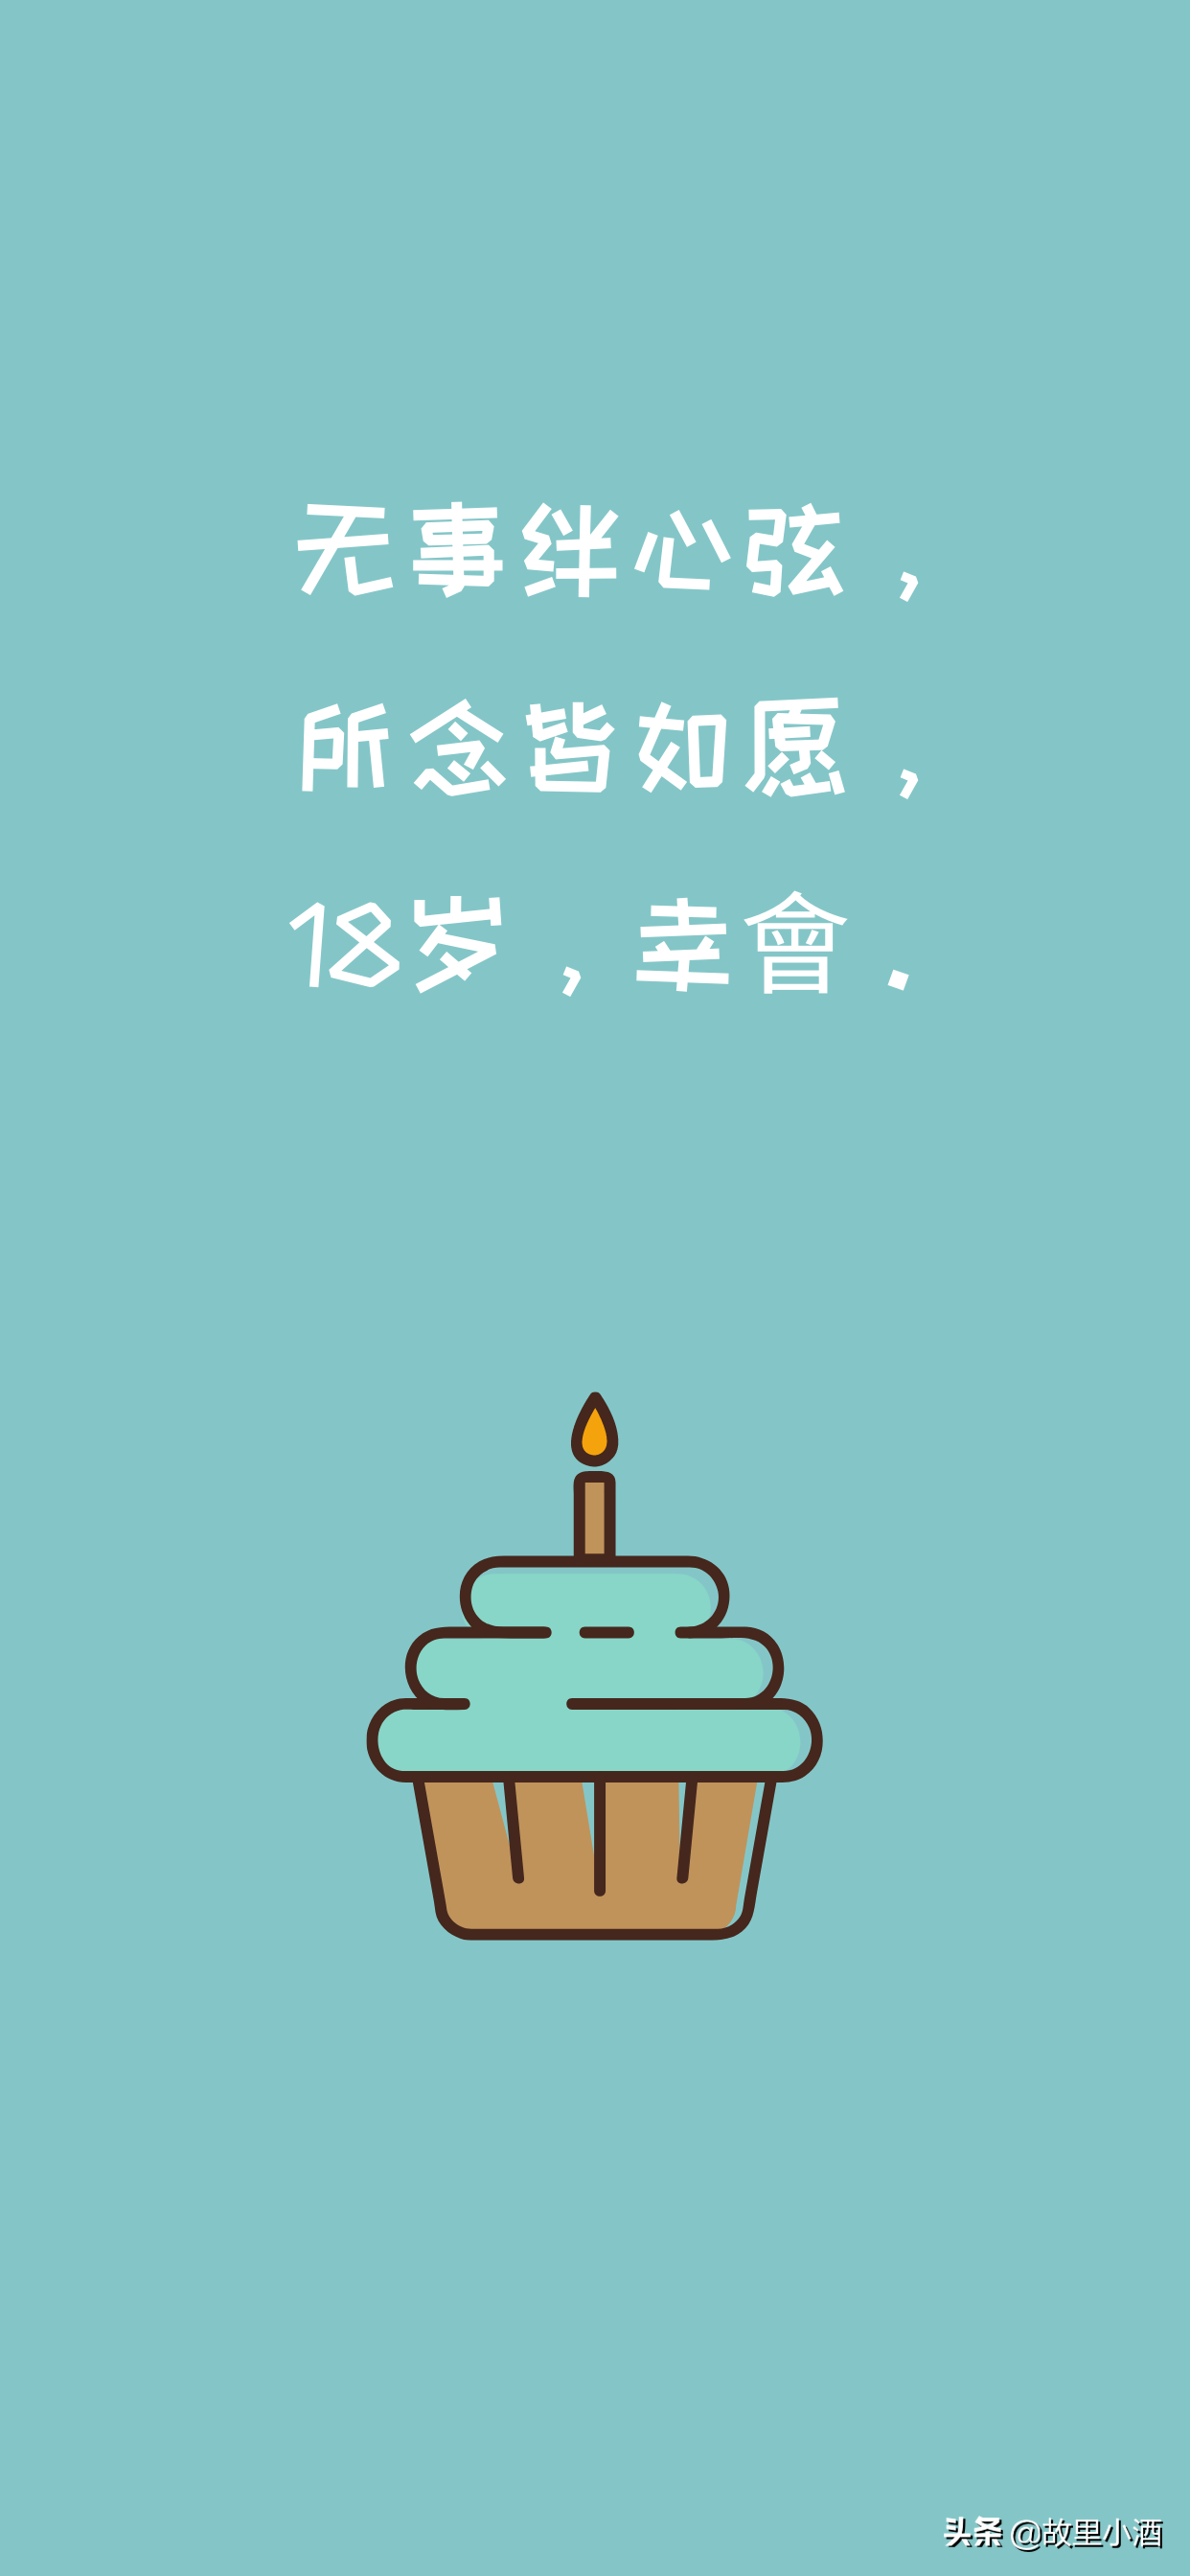 祝自己生日快乐祝福语适合自己生日发的句子